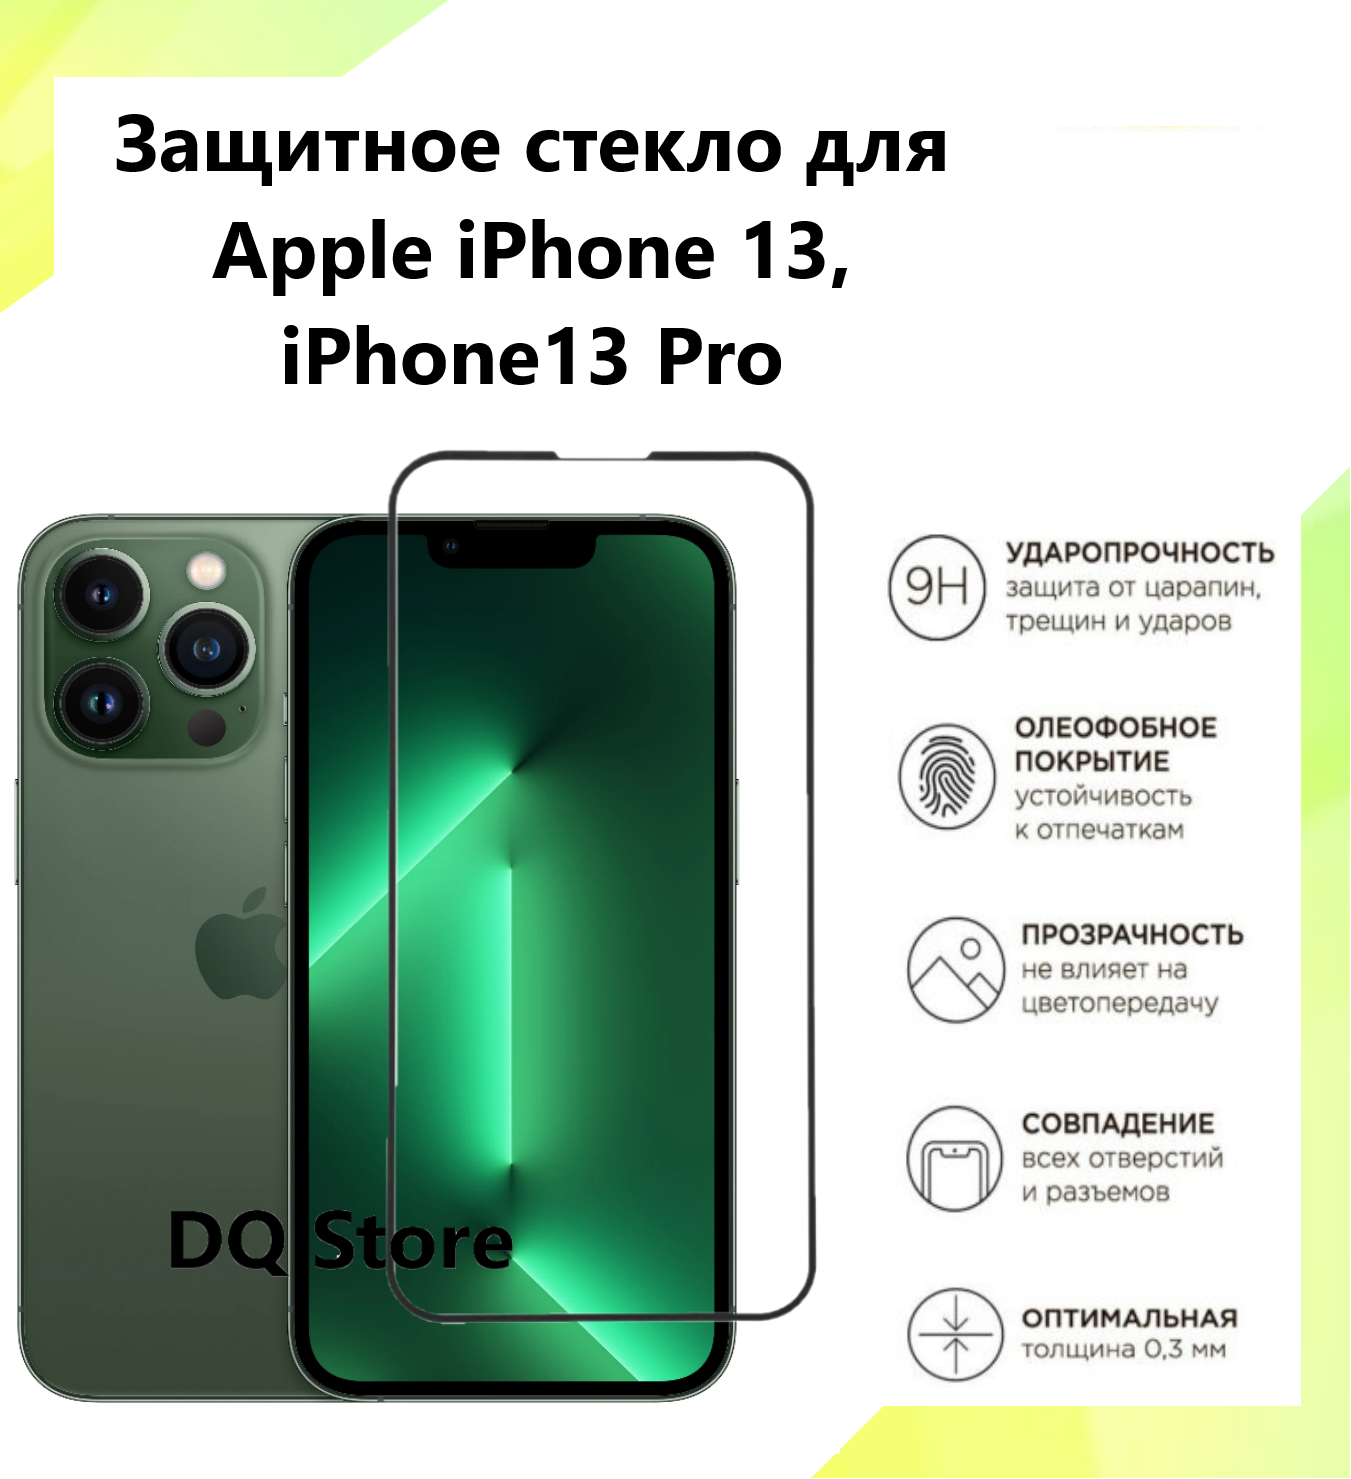 Защитное стекло на Apple iPhone 13 / iPhone 13 Pro / Эпл Айфон 13 / Айфон 13 Про . Полноэкранное защитное стекло с олеофобным покрытием